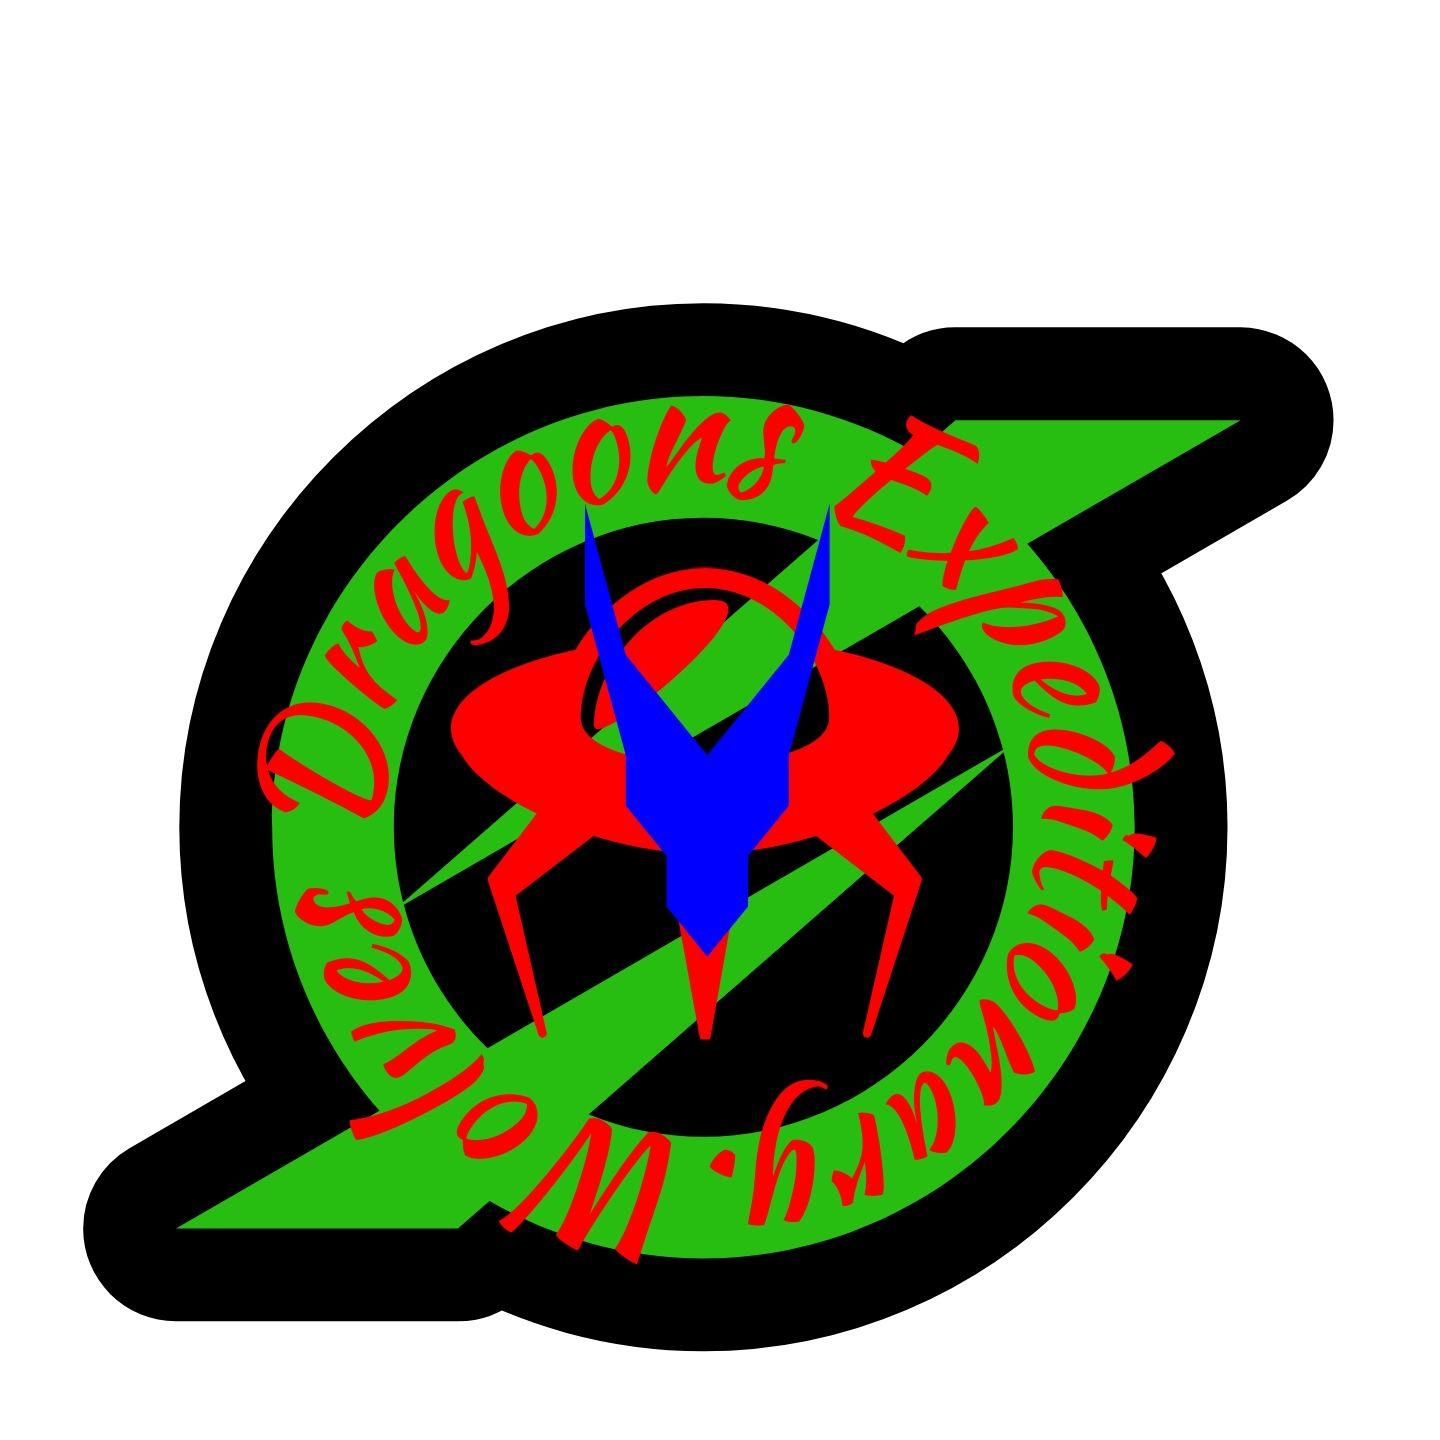 Reconnaissance Logo - New experimental reconnaissance logo. : WolvesDragoons